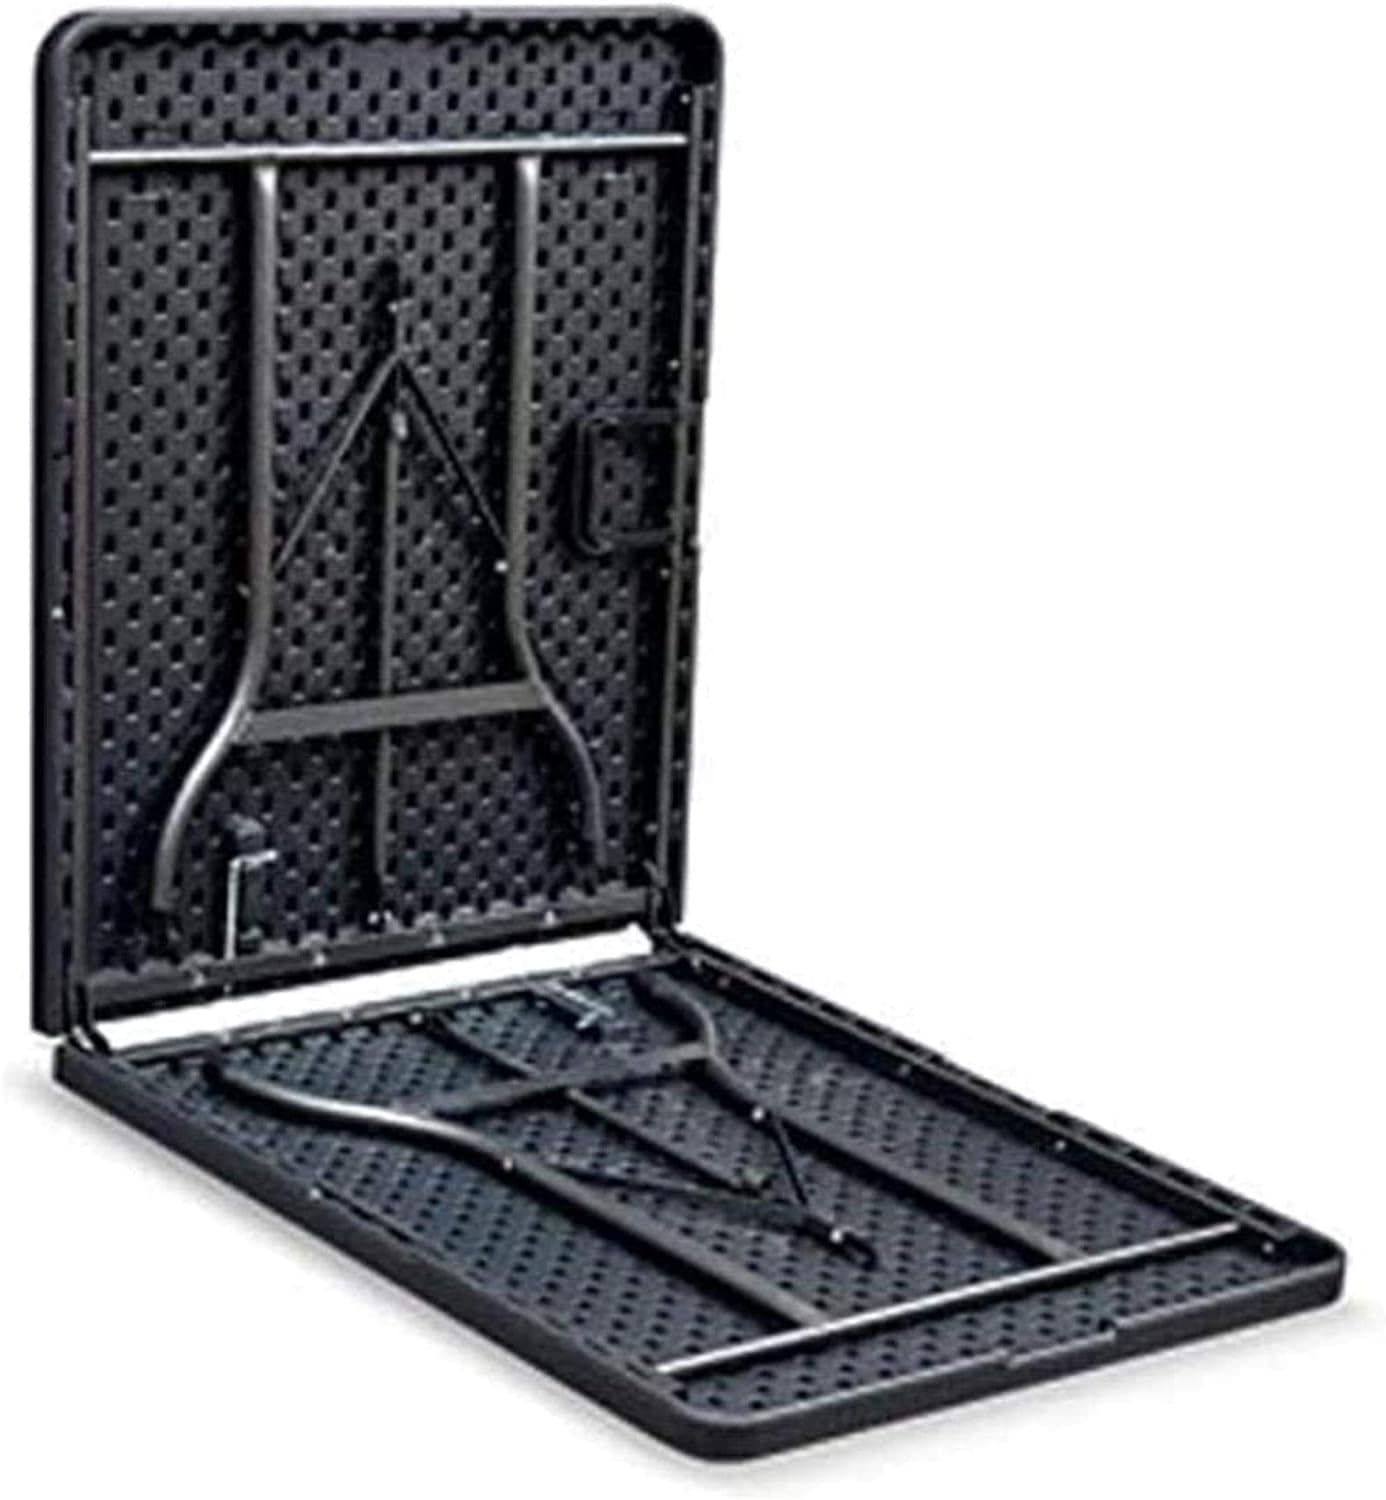 Portable Plastic Folding Table Black Wood design 75D x 75W x 75H cm 8-10 Person - Al Ghani Stores